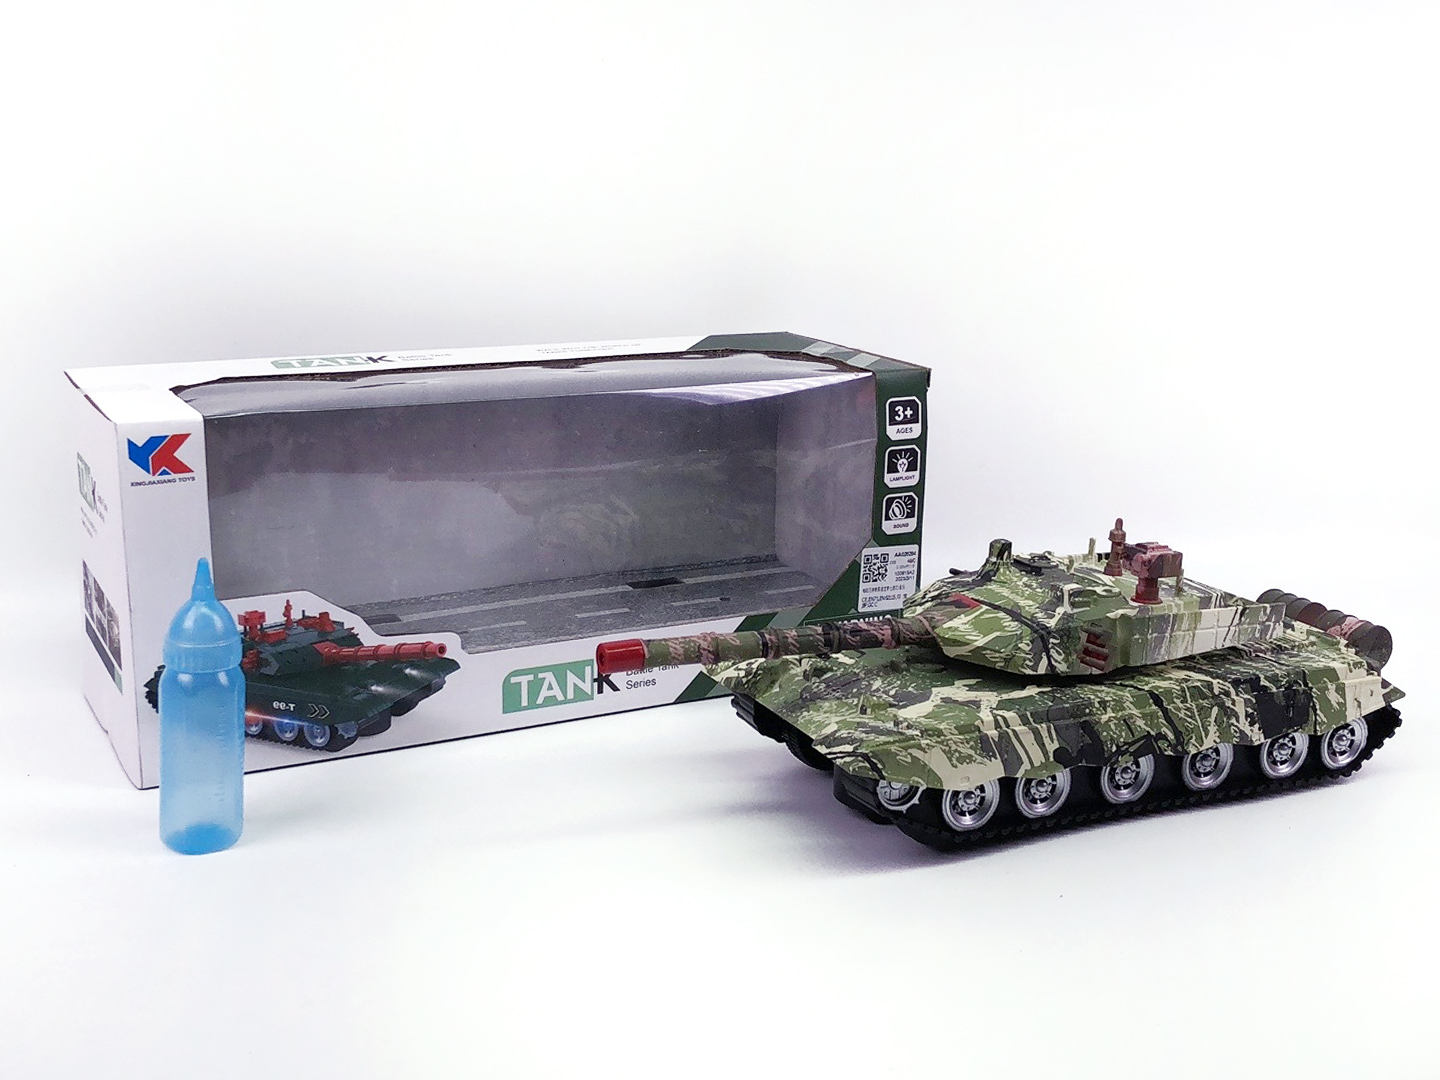 B/O universal Panzer W/L_M toys